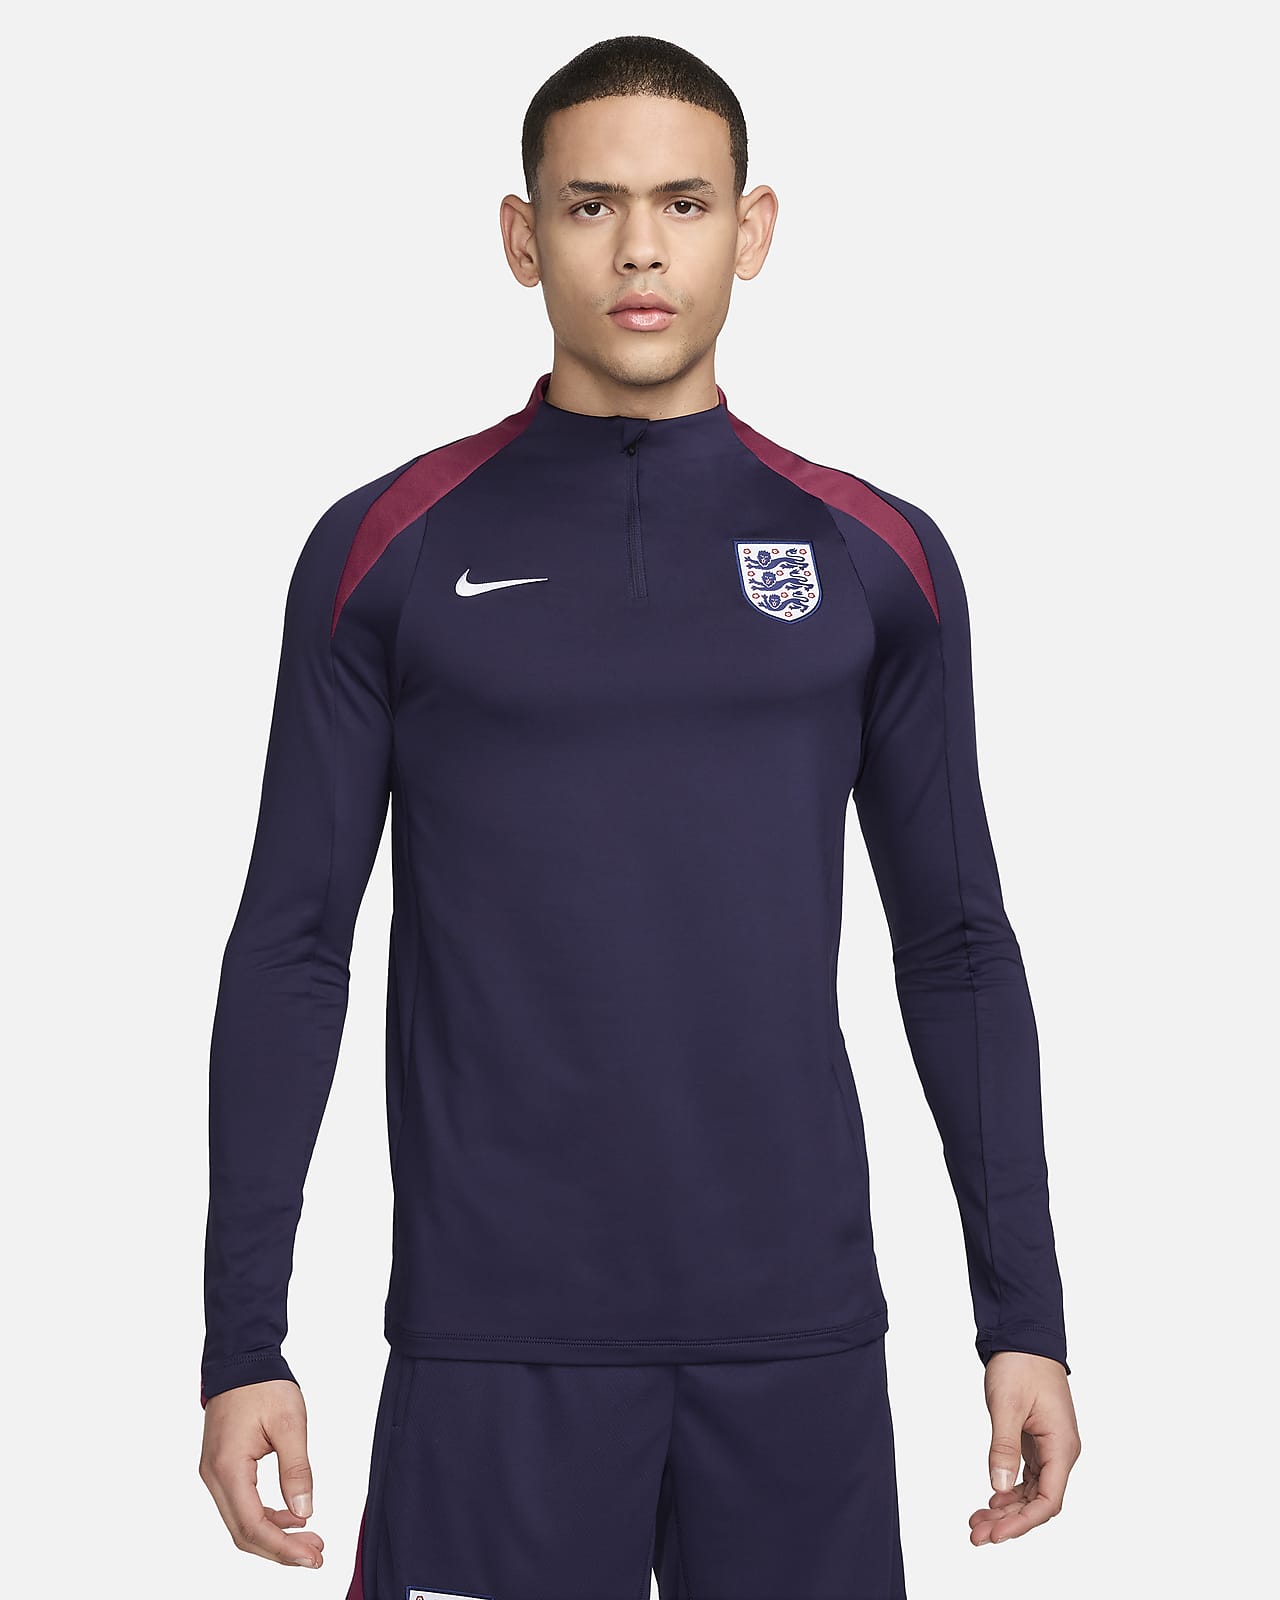 Ανδρική ποδοσφαιρική μπλούζα προπόνησης Nike Dri-FIT Αγγλία Strike